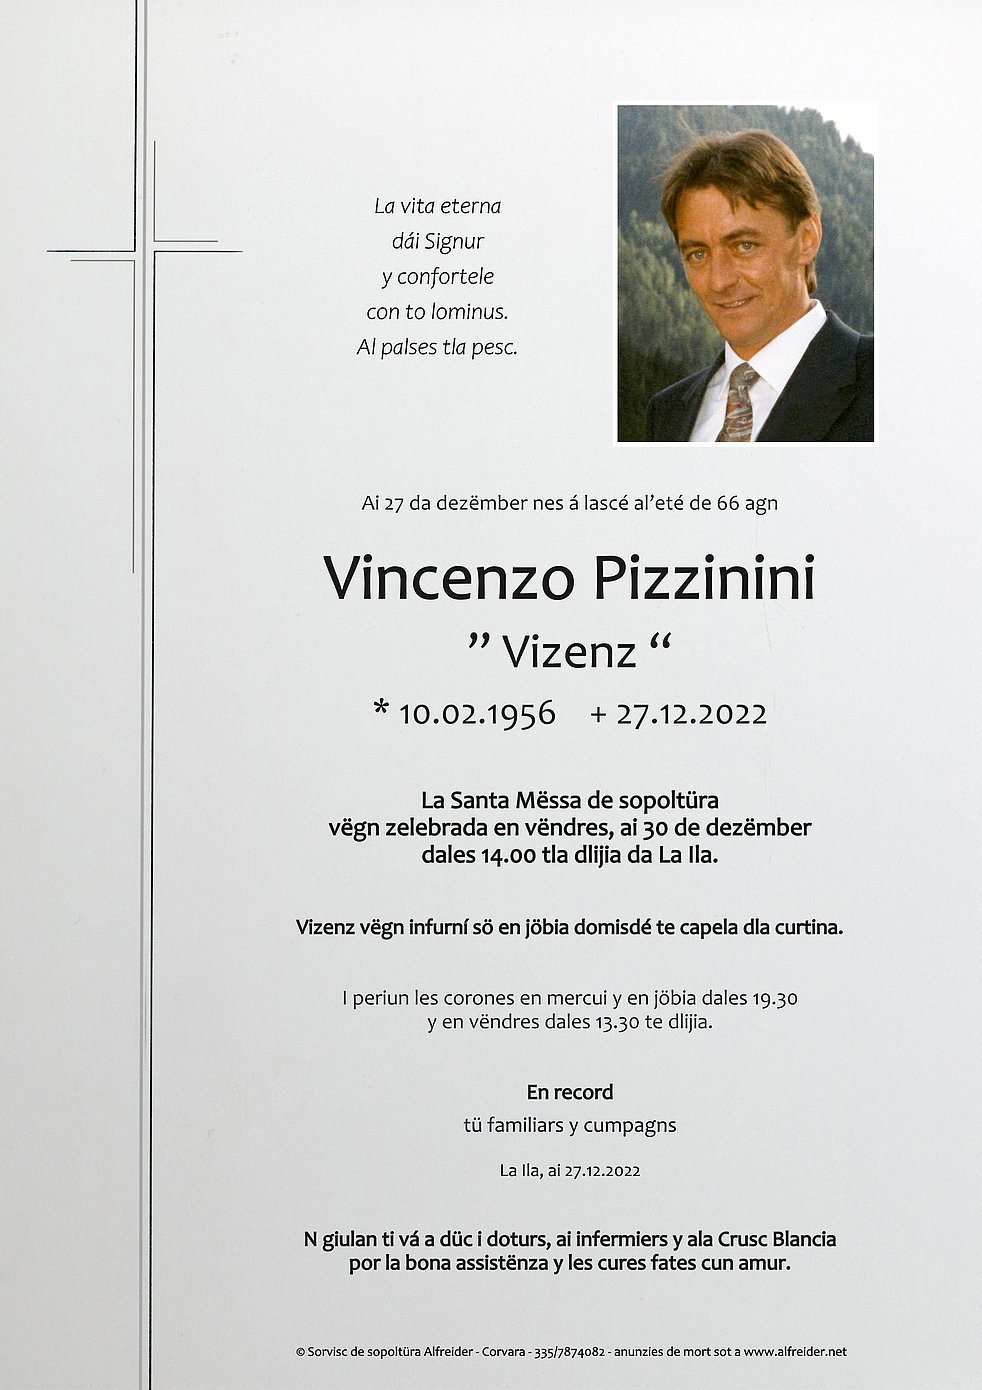 Vincenzo Pizzinini aus Abtei - TrauerHilfe.it - das Südtiroler Gedenkportal